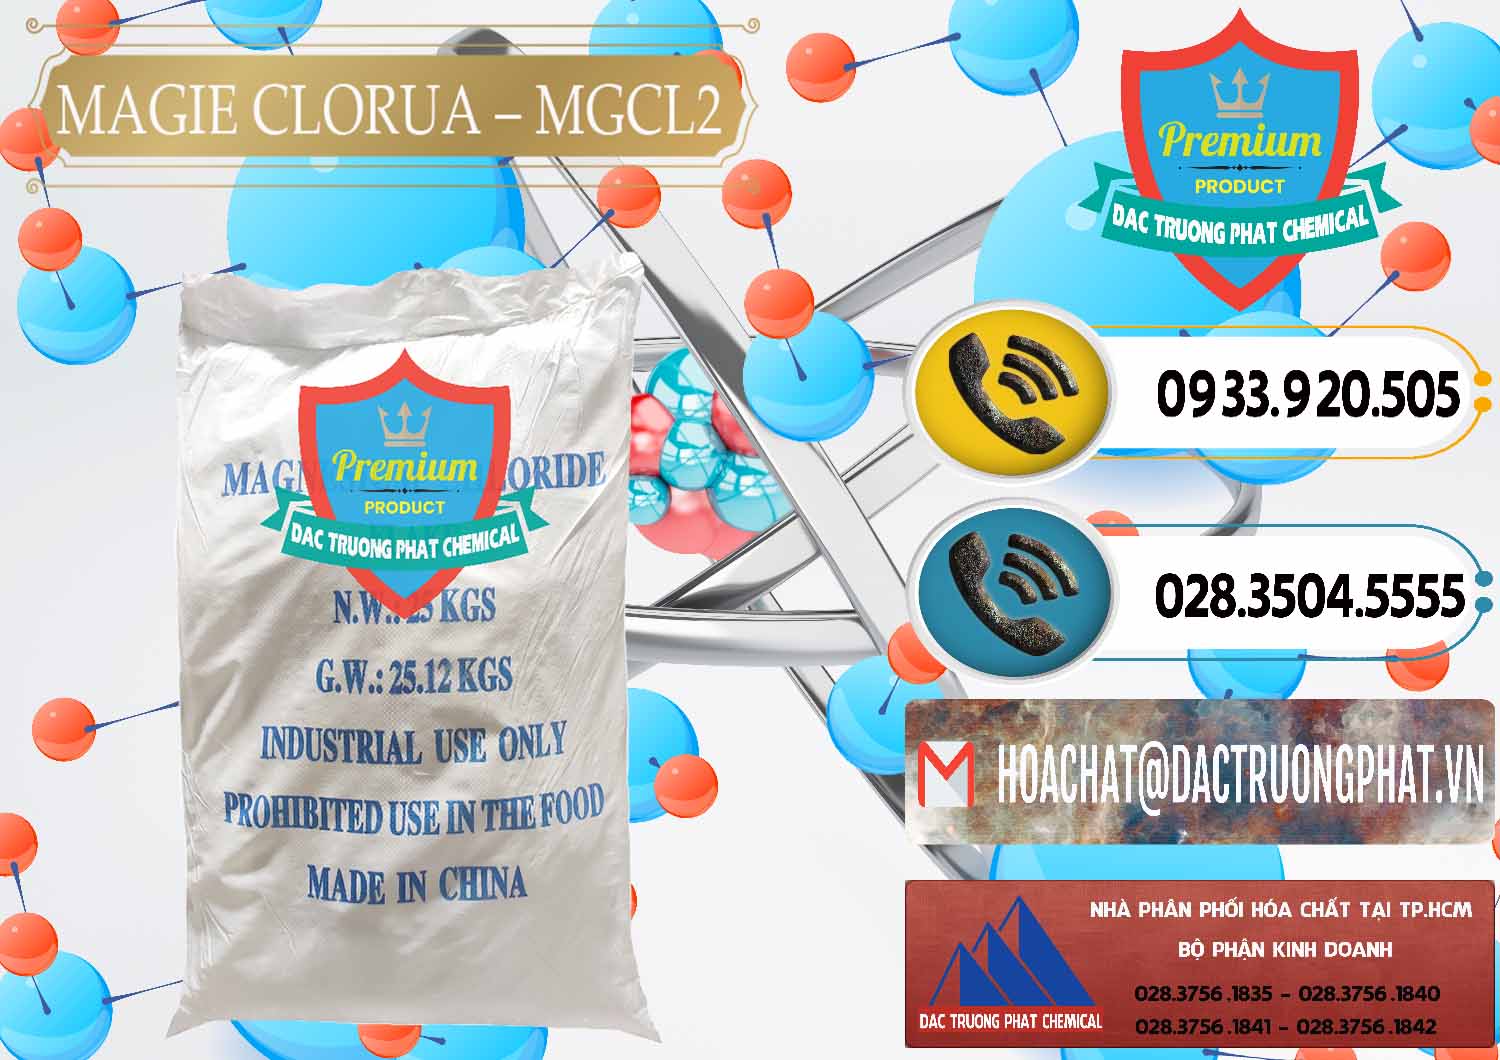 Nơi cung ứng và bán Magie Clorua – MGCL2 96% Dạng Vảy Trung Quốc China - 0091 - Nơi chuyên phân phối & cung ứng hóa chất tại TP.HCM - hoachatdetnhuom.vn